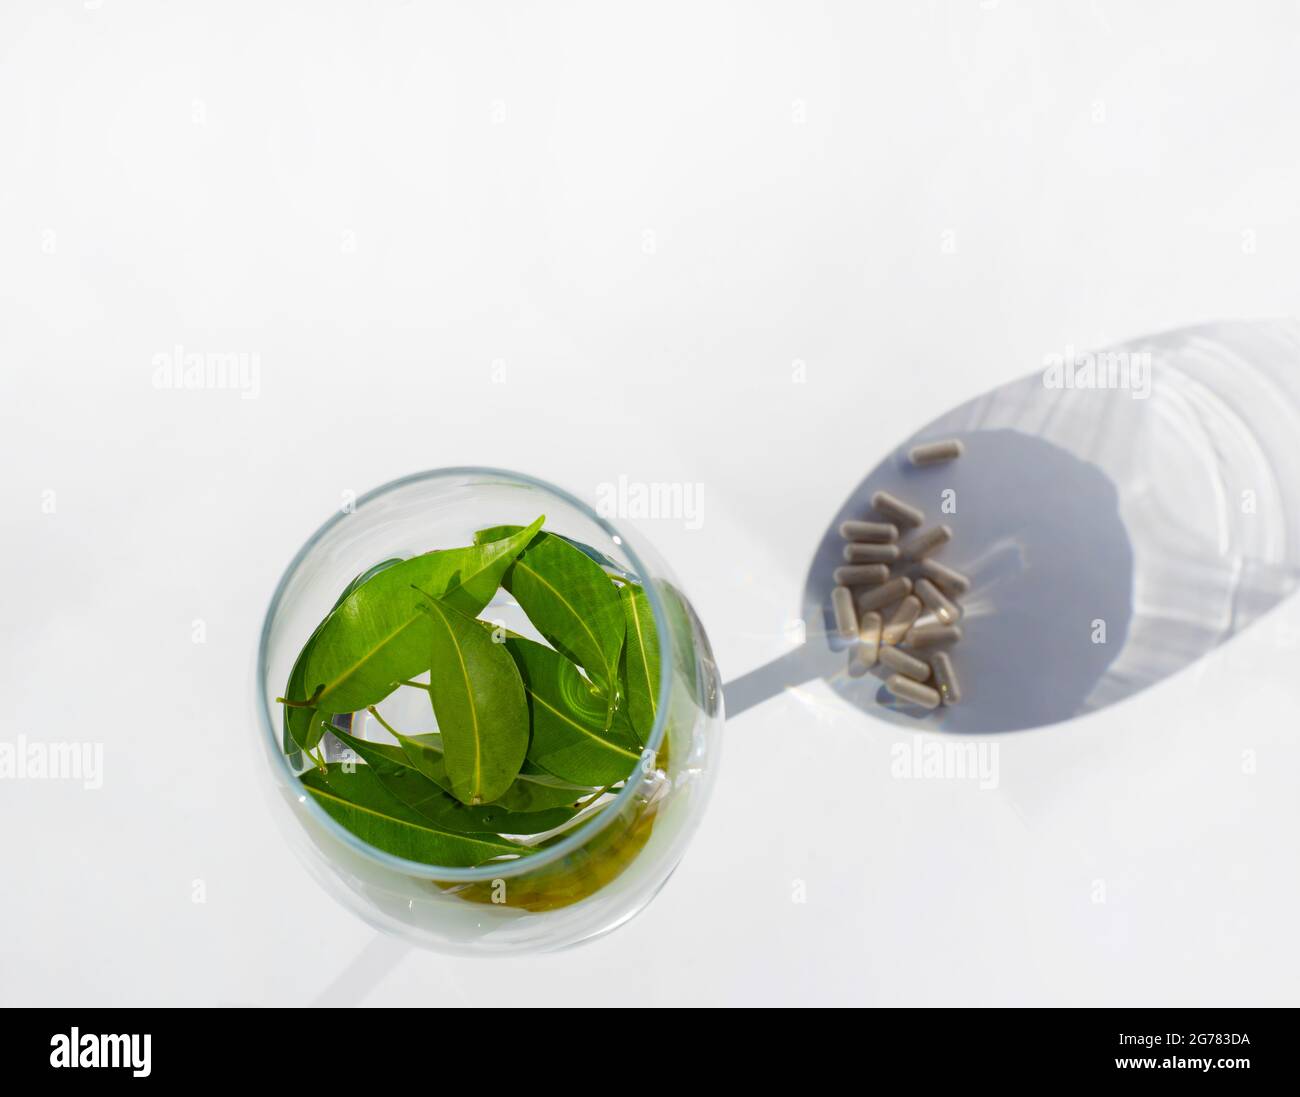 Weinglas mit Wasser und grünen frischen Blättern. Die Kapseln liegen in der Spiegelung des Glases. Schatten in Form eines Weinglases. Stockfoto